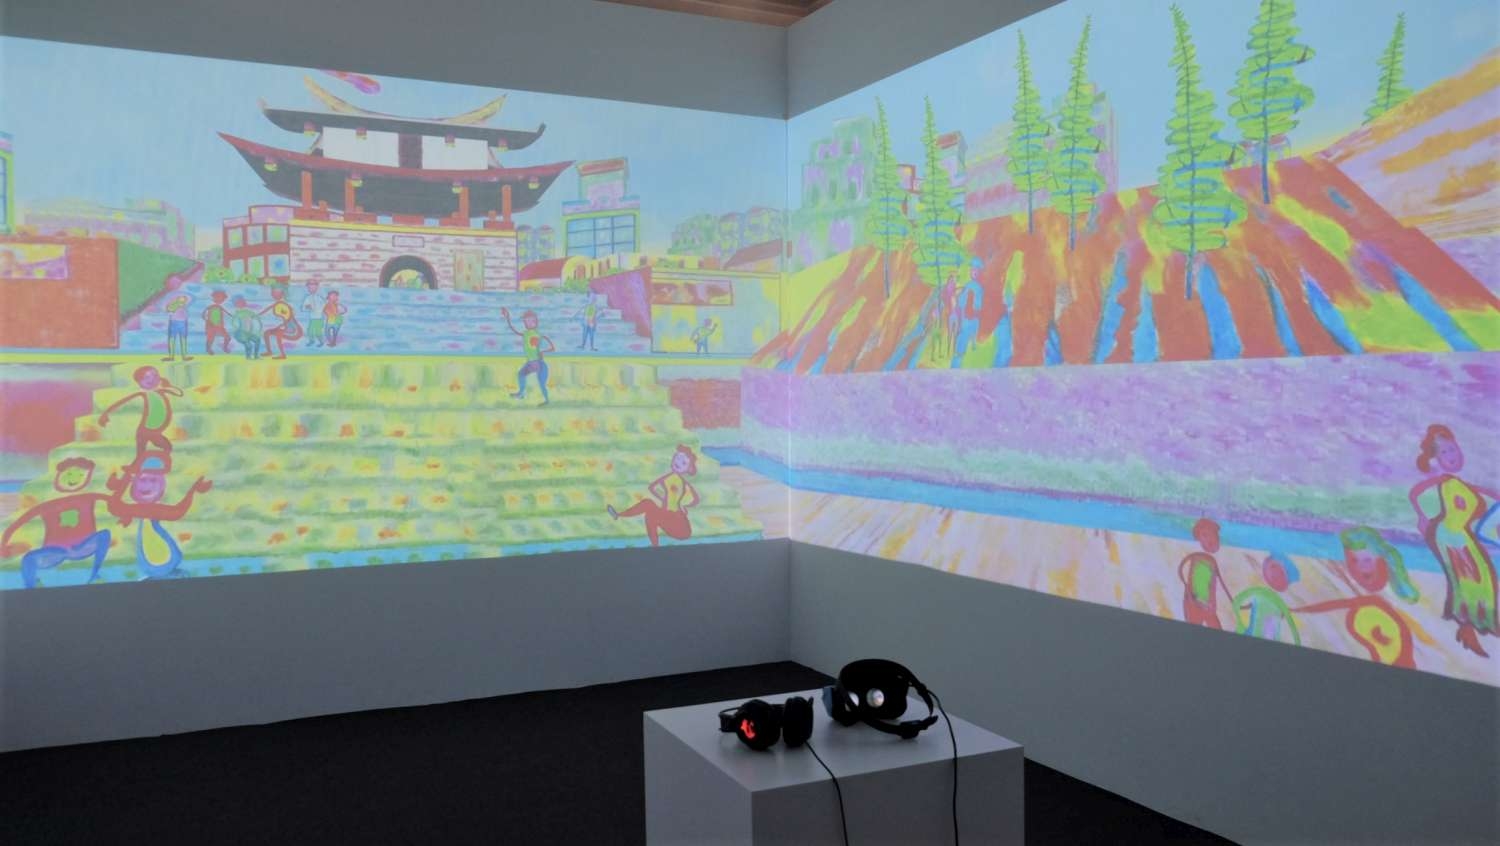 04-以VR技術將黃志超新作《東門城》作品轉為360度VR全景畫面